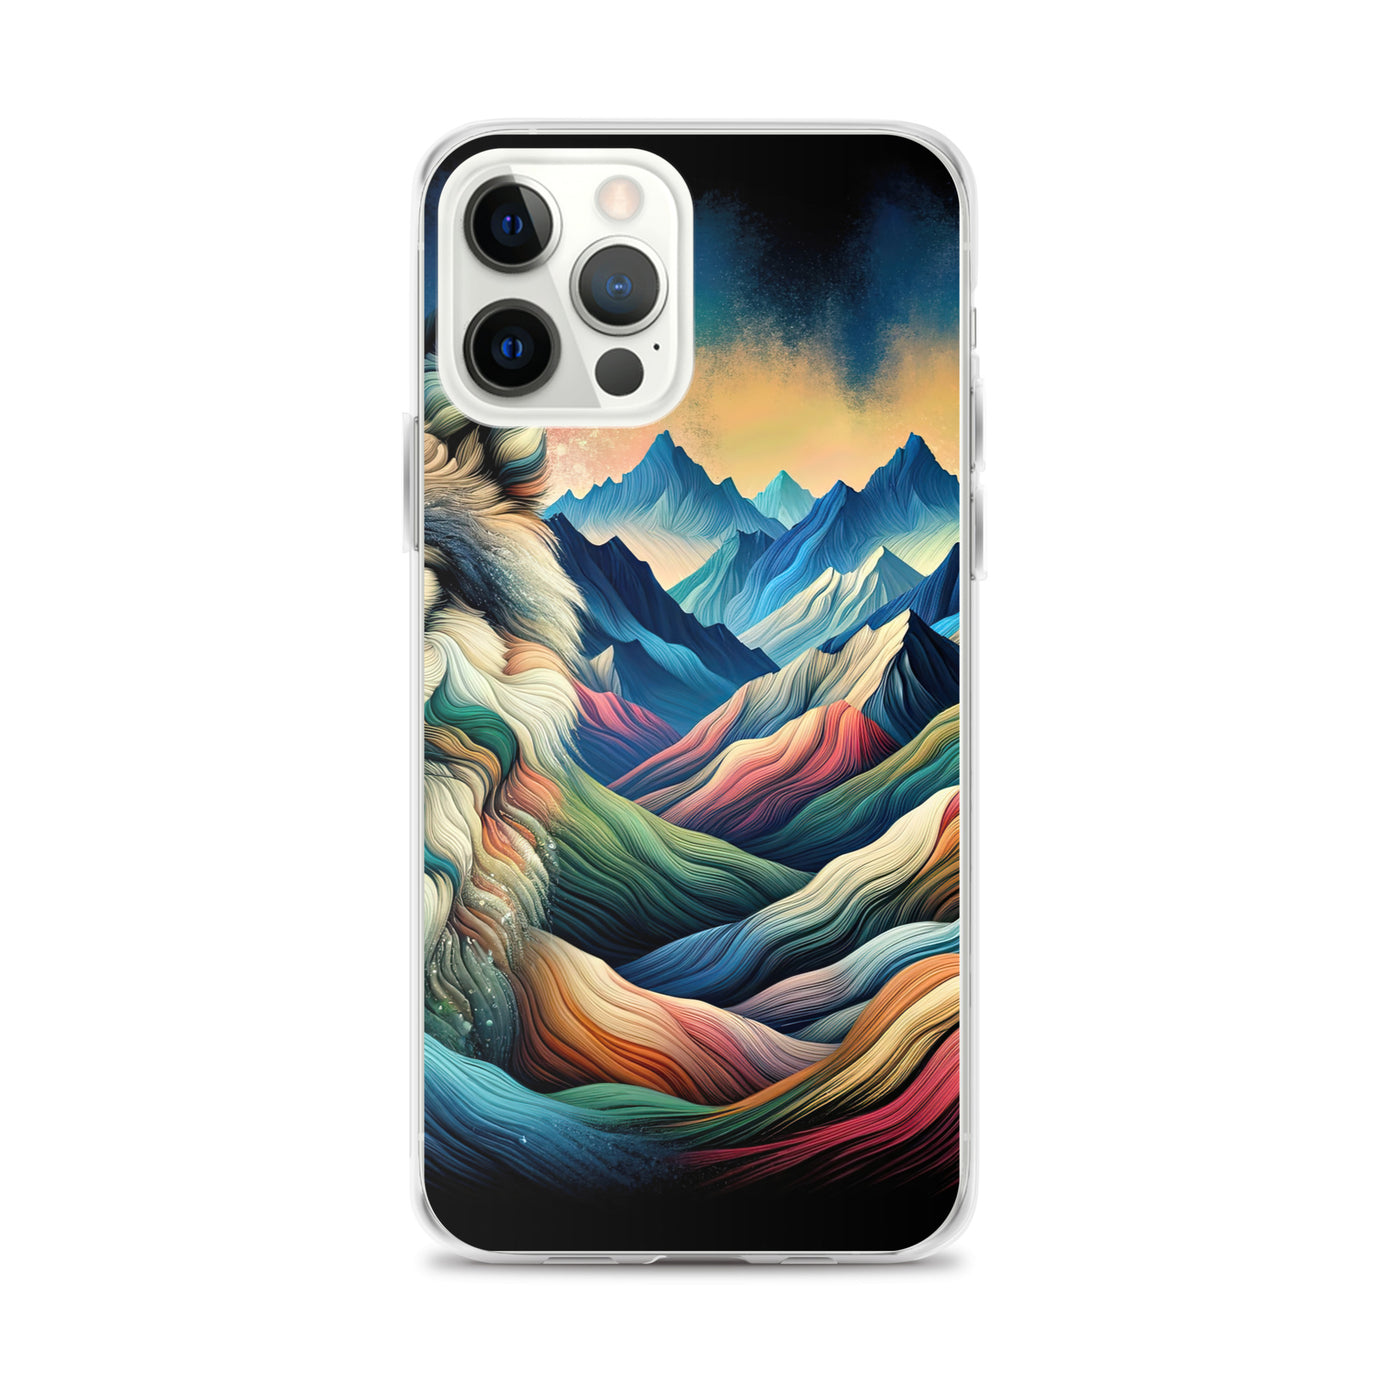 Traumhaftes Alpenpanorama mit Wolf in wechselnden Farben und Mustern (AN) - iPhone Schutzhülle (durchsichtig) xxx yyy zzz iPhone 12 Pro Max